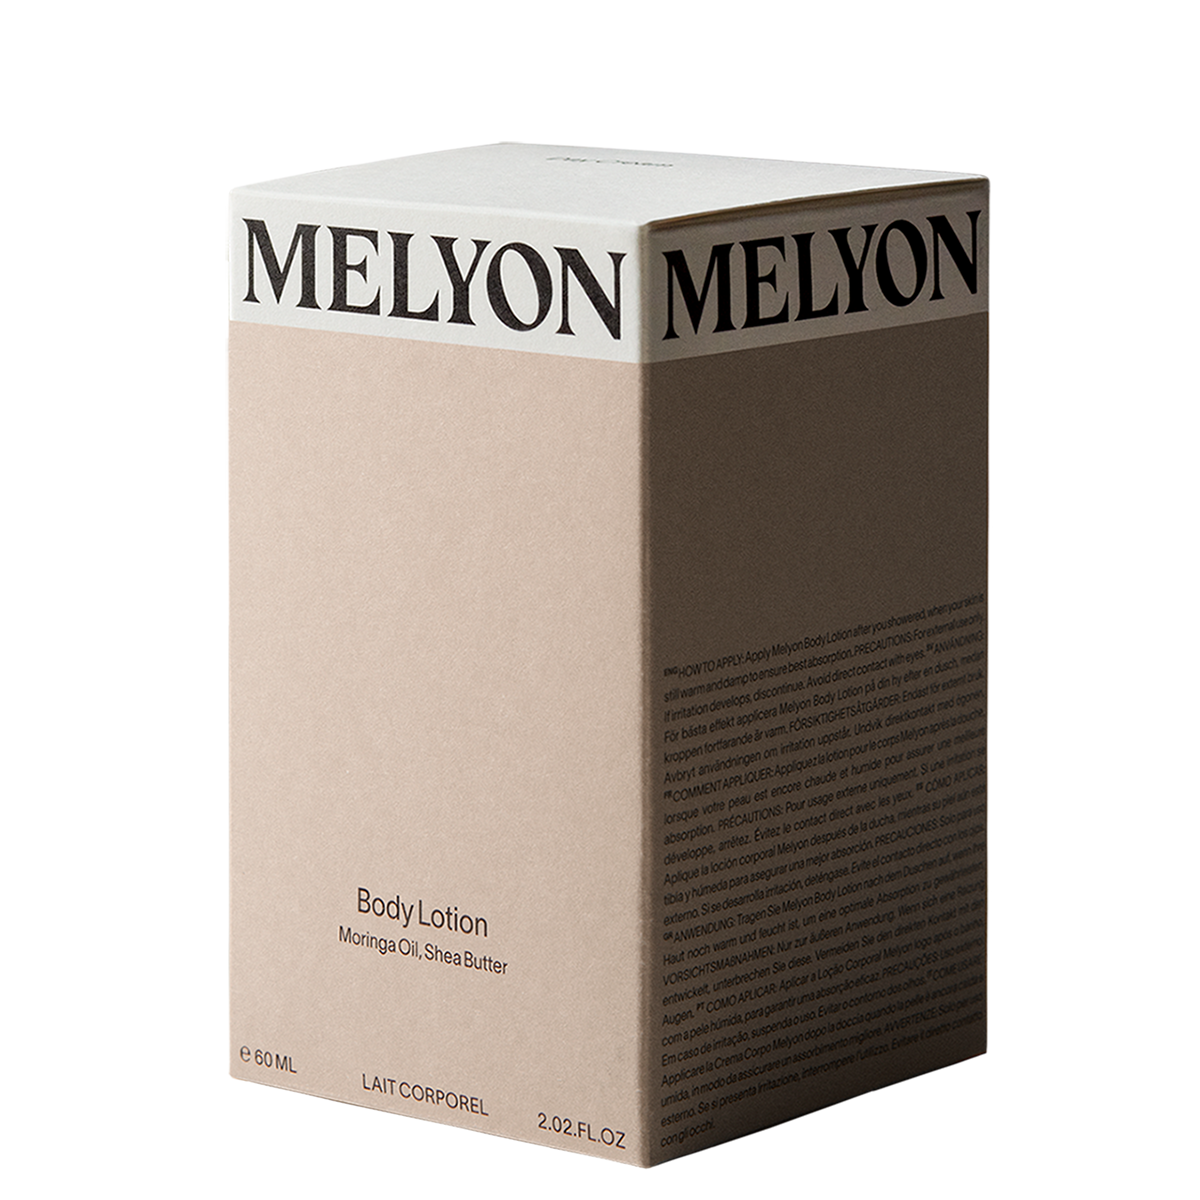 Melyon Body Lotion 60ml